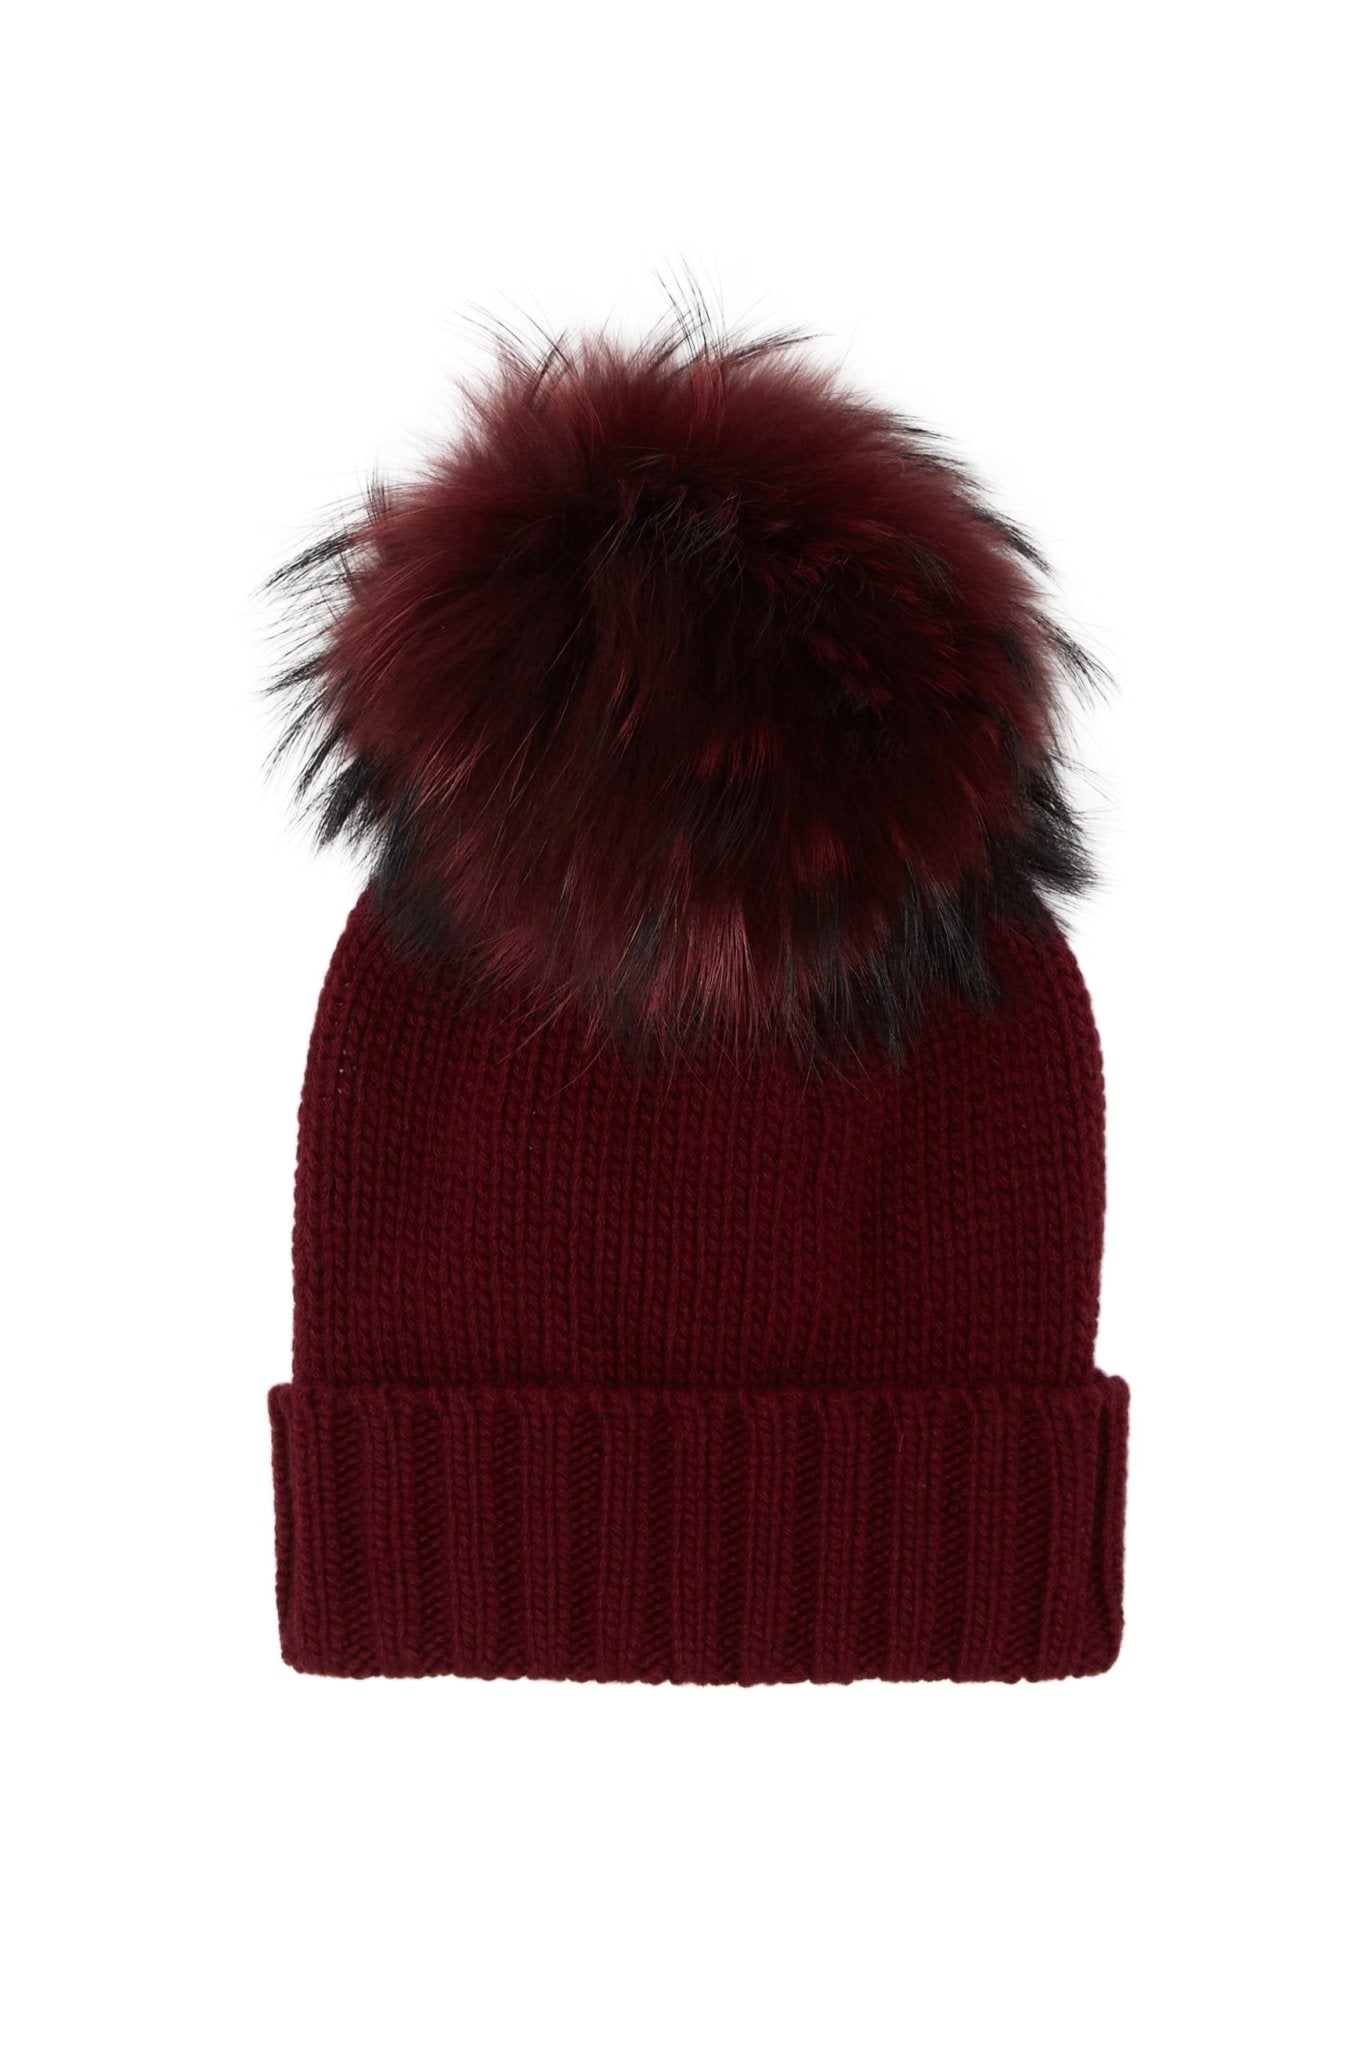 Inverni - Soft accessories-Hats